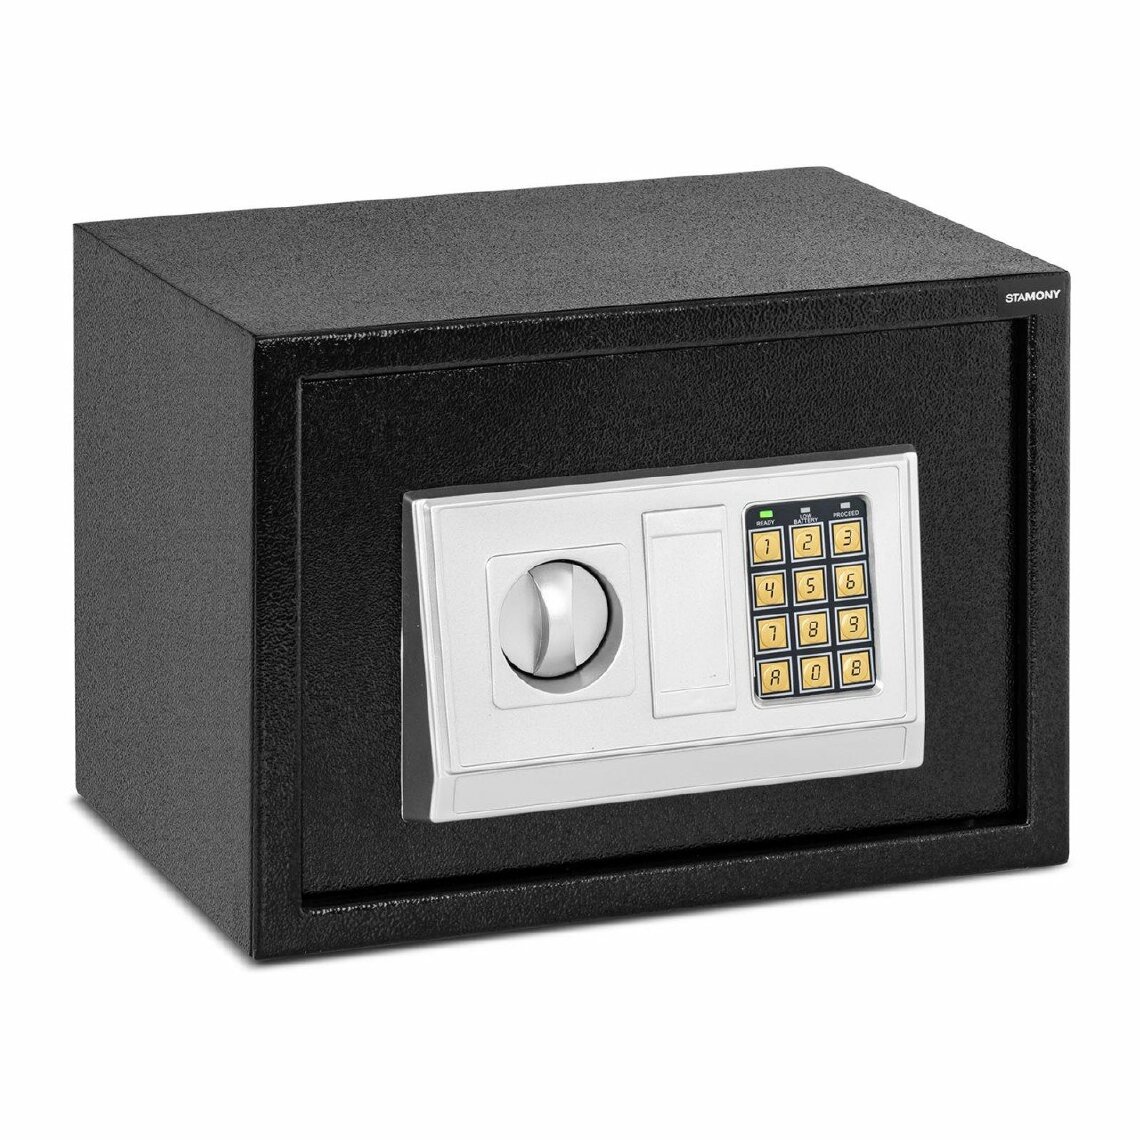 Helloshop26 - Coffre-fort électronique numérique combinaison programmable clés de secours piles incluses acier - 35 x 25 x 25 cm 14_0001080 - Coffre fort